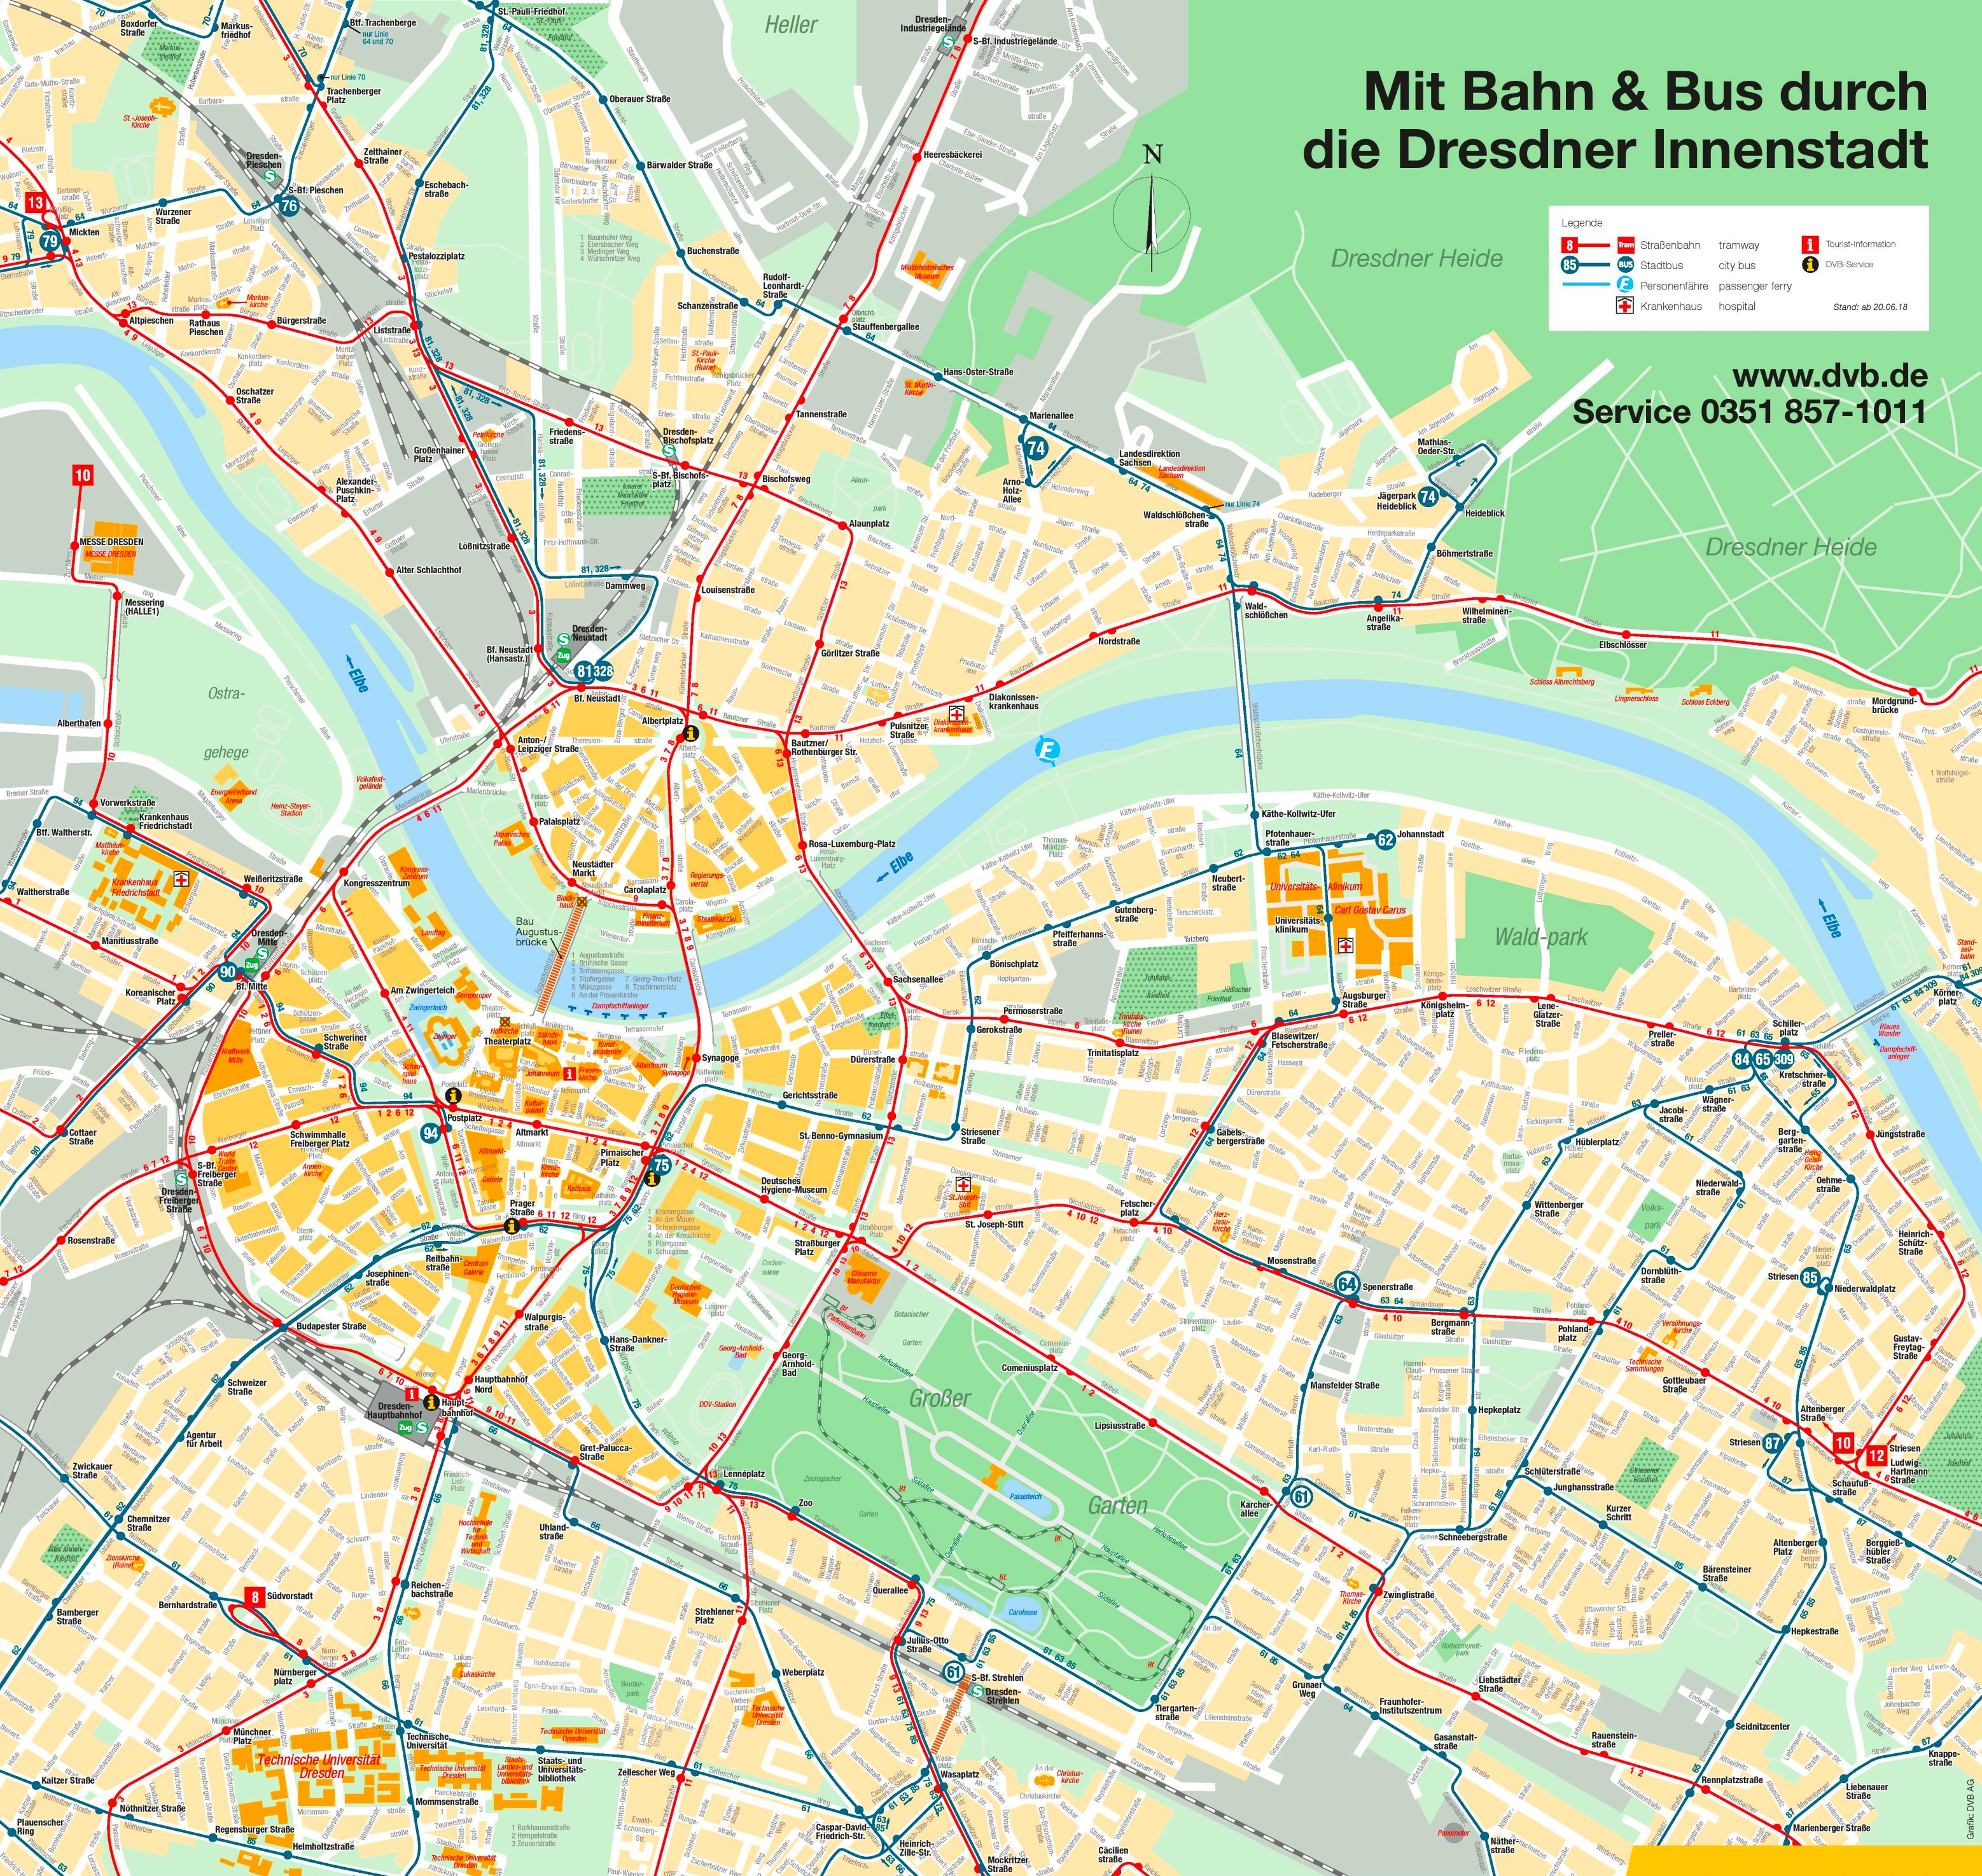 Gratis Dresden Stadtplan mit Sehenswürdigkeiten zum Download - PLANATIVE